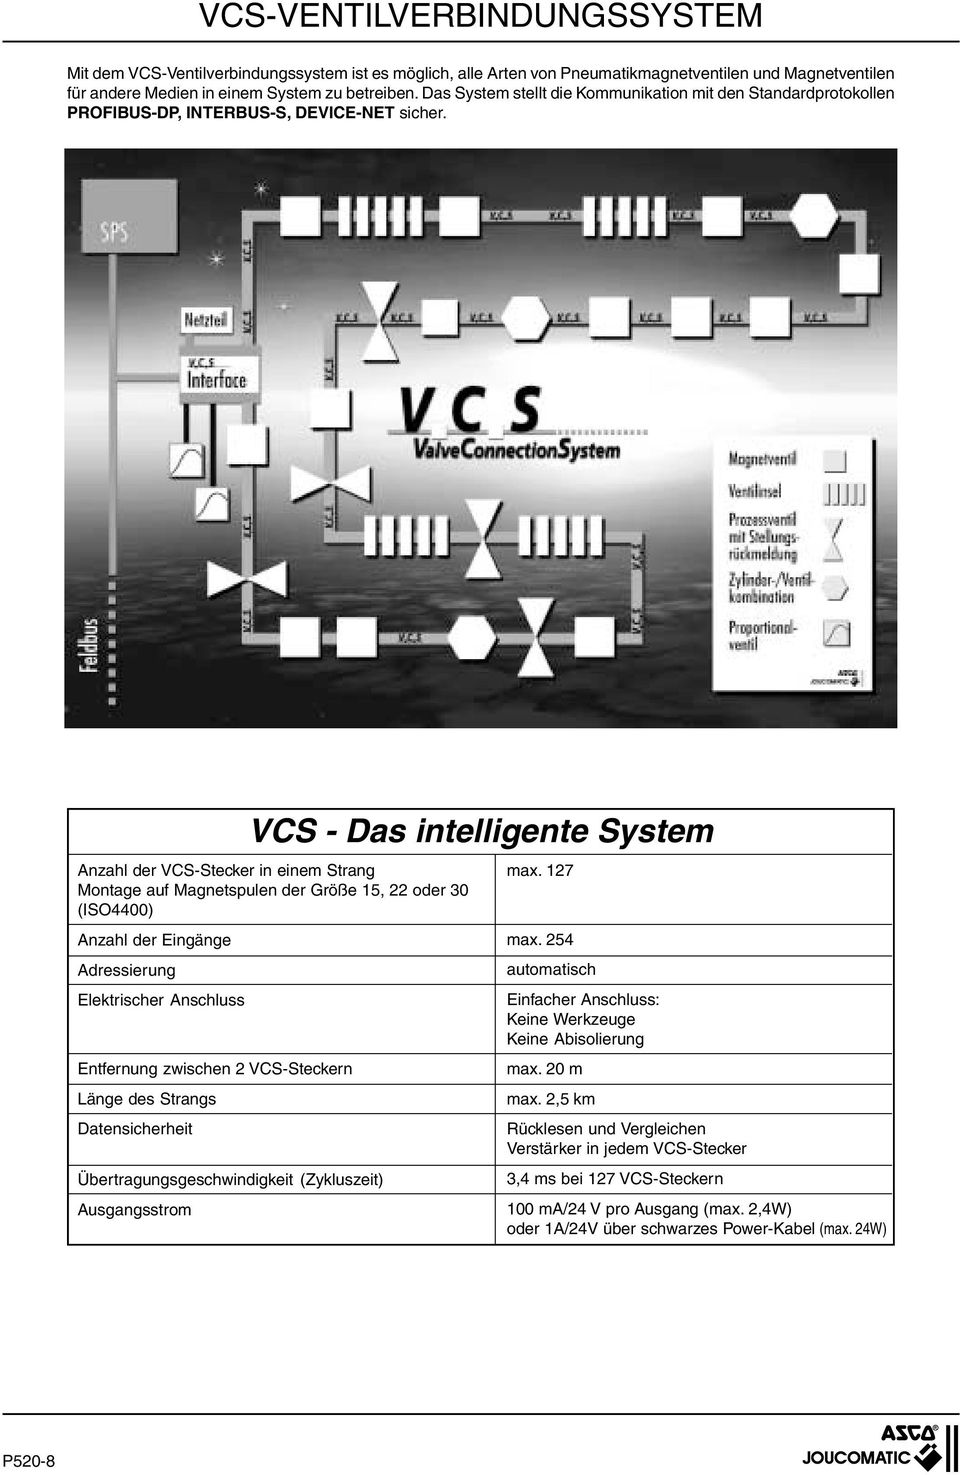 VCS - Das intelligente System Anzahl der Stecker in einem Strang Montage auf Magnetspulen der Größe 1, 22 oder 30 (ISO4400) Anzahl der Eingänge Adressierung Elektrischer Anschluss Entfernung zwischen